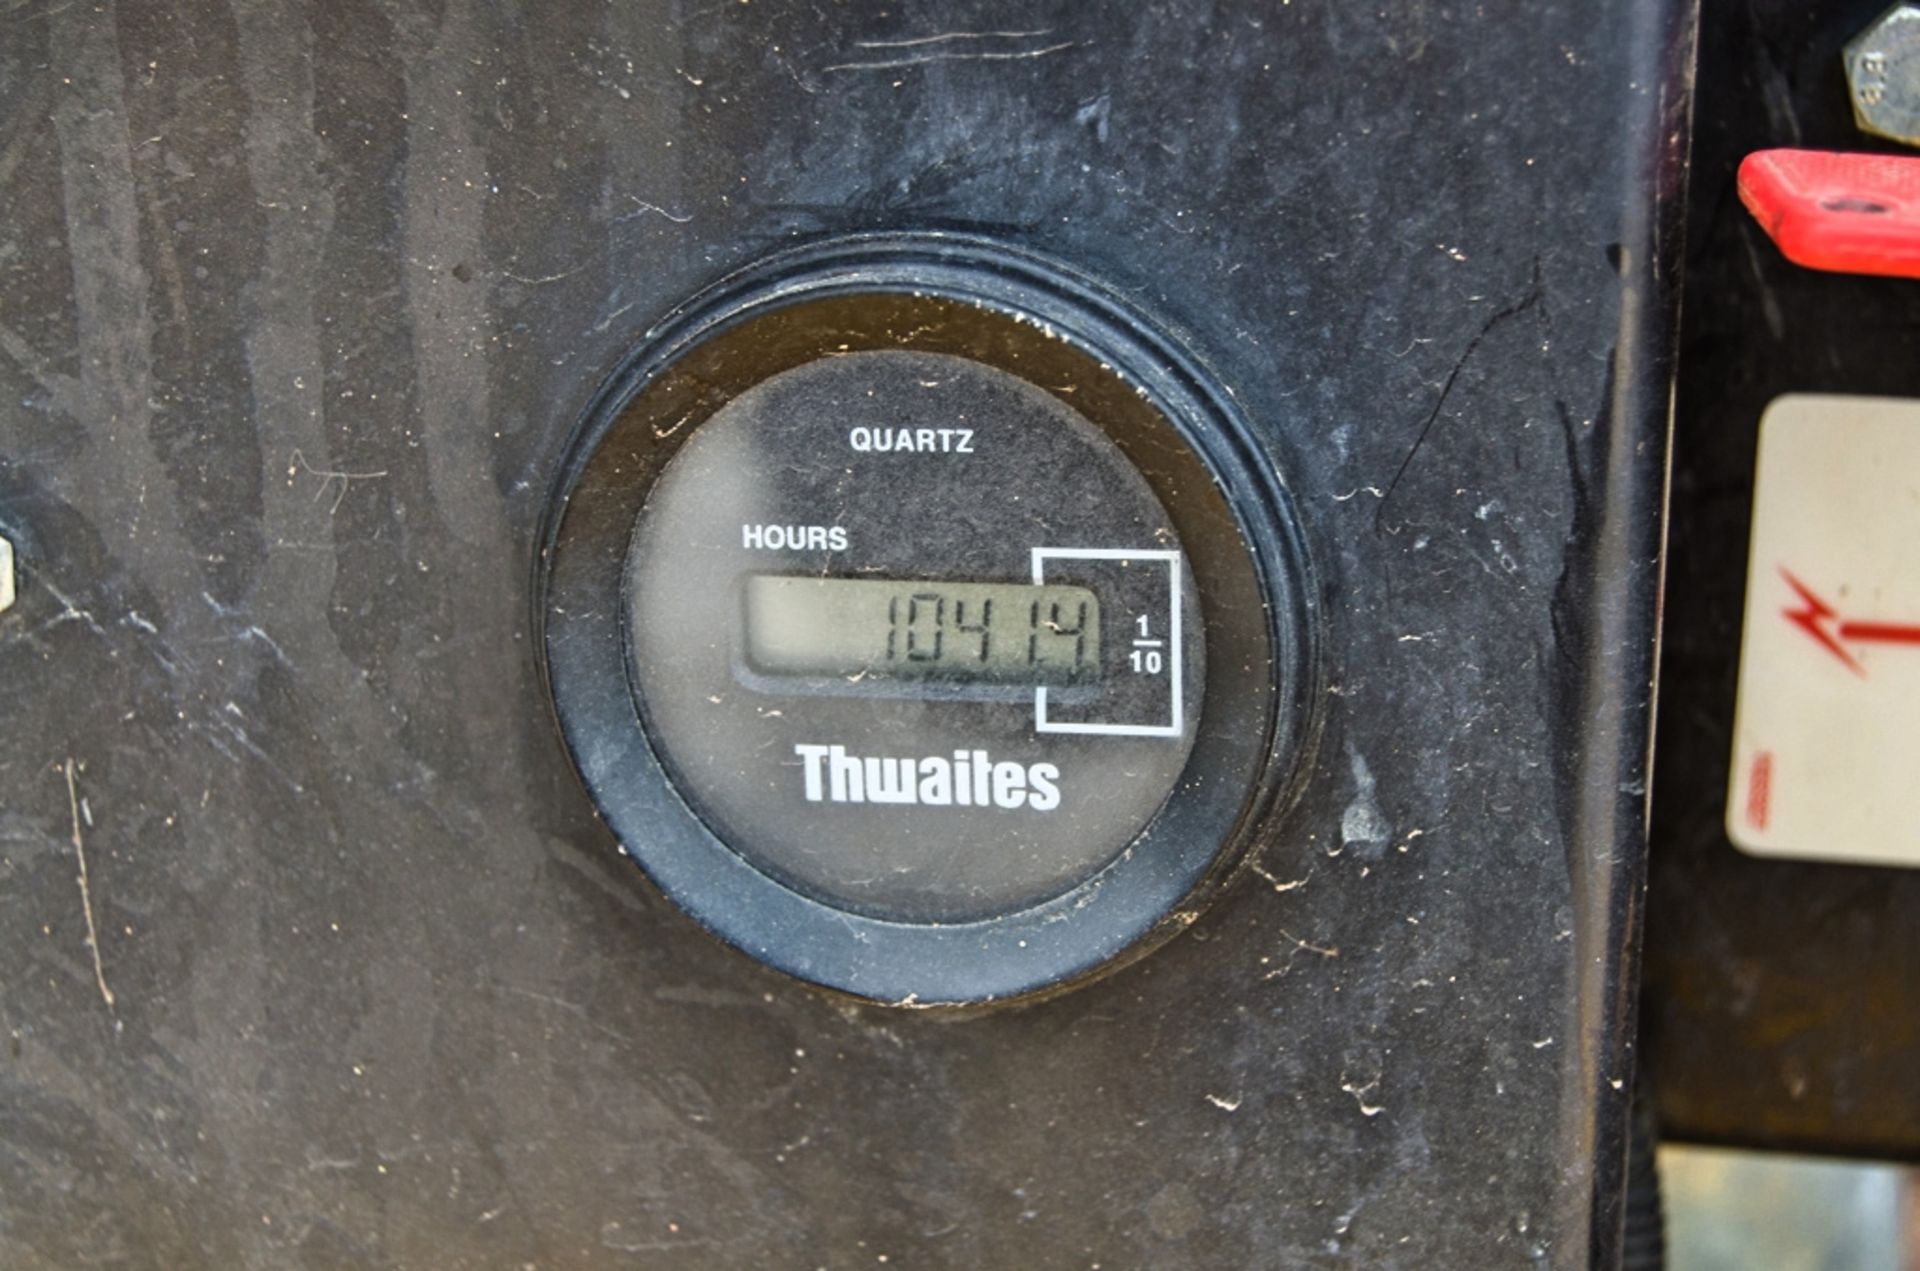 Thwaites 3 tonne straight skip dumper Year: 2019 S/N: 915E5258 Recorded Hours: 1041 03DU0113 - Image 20 of 22